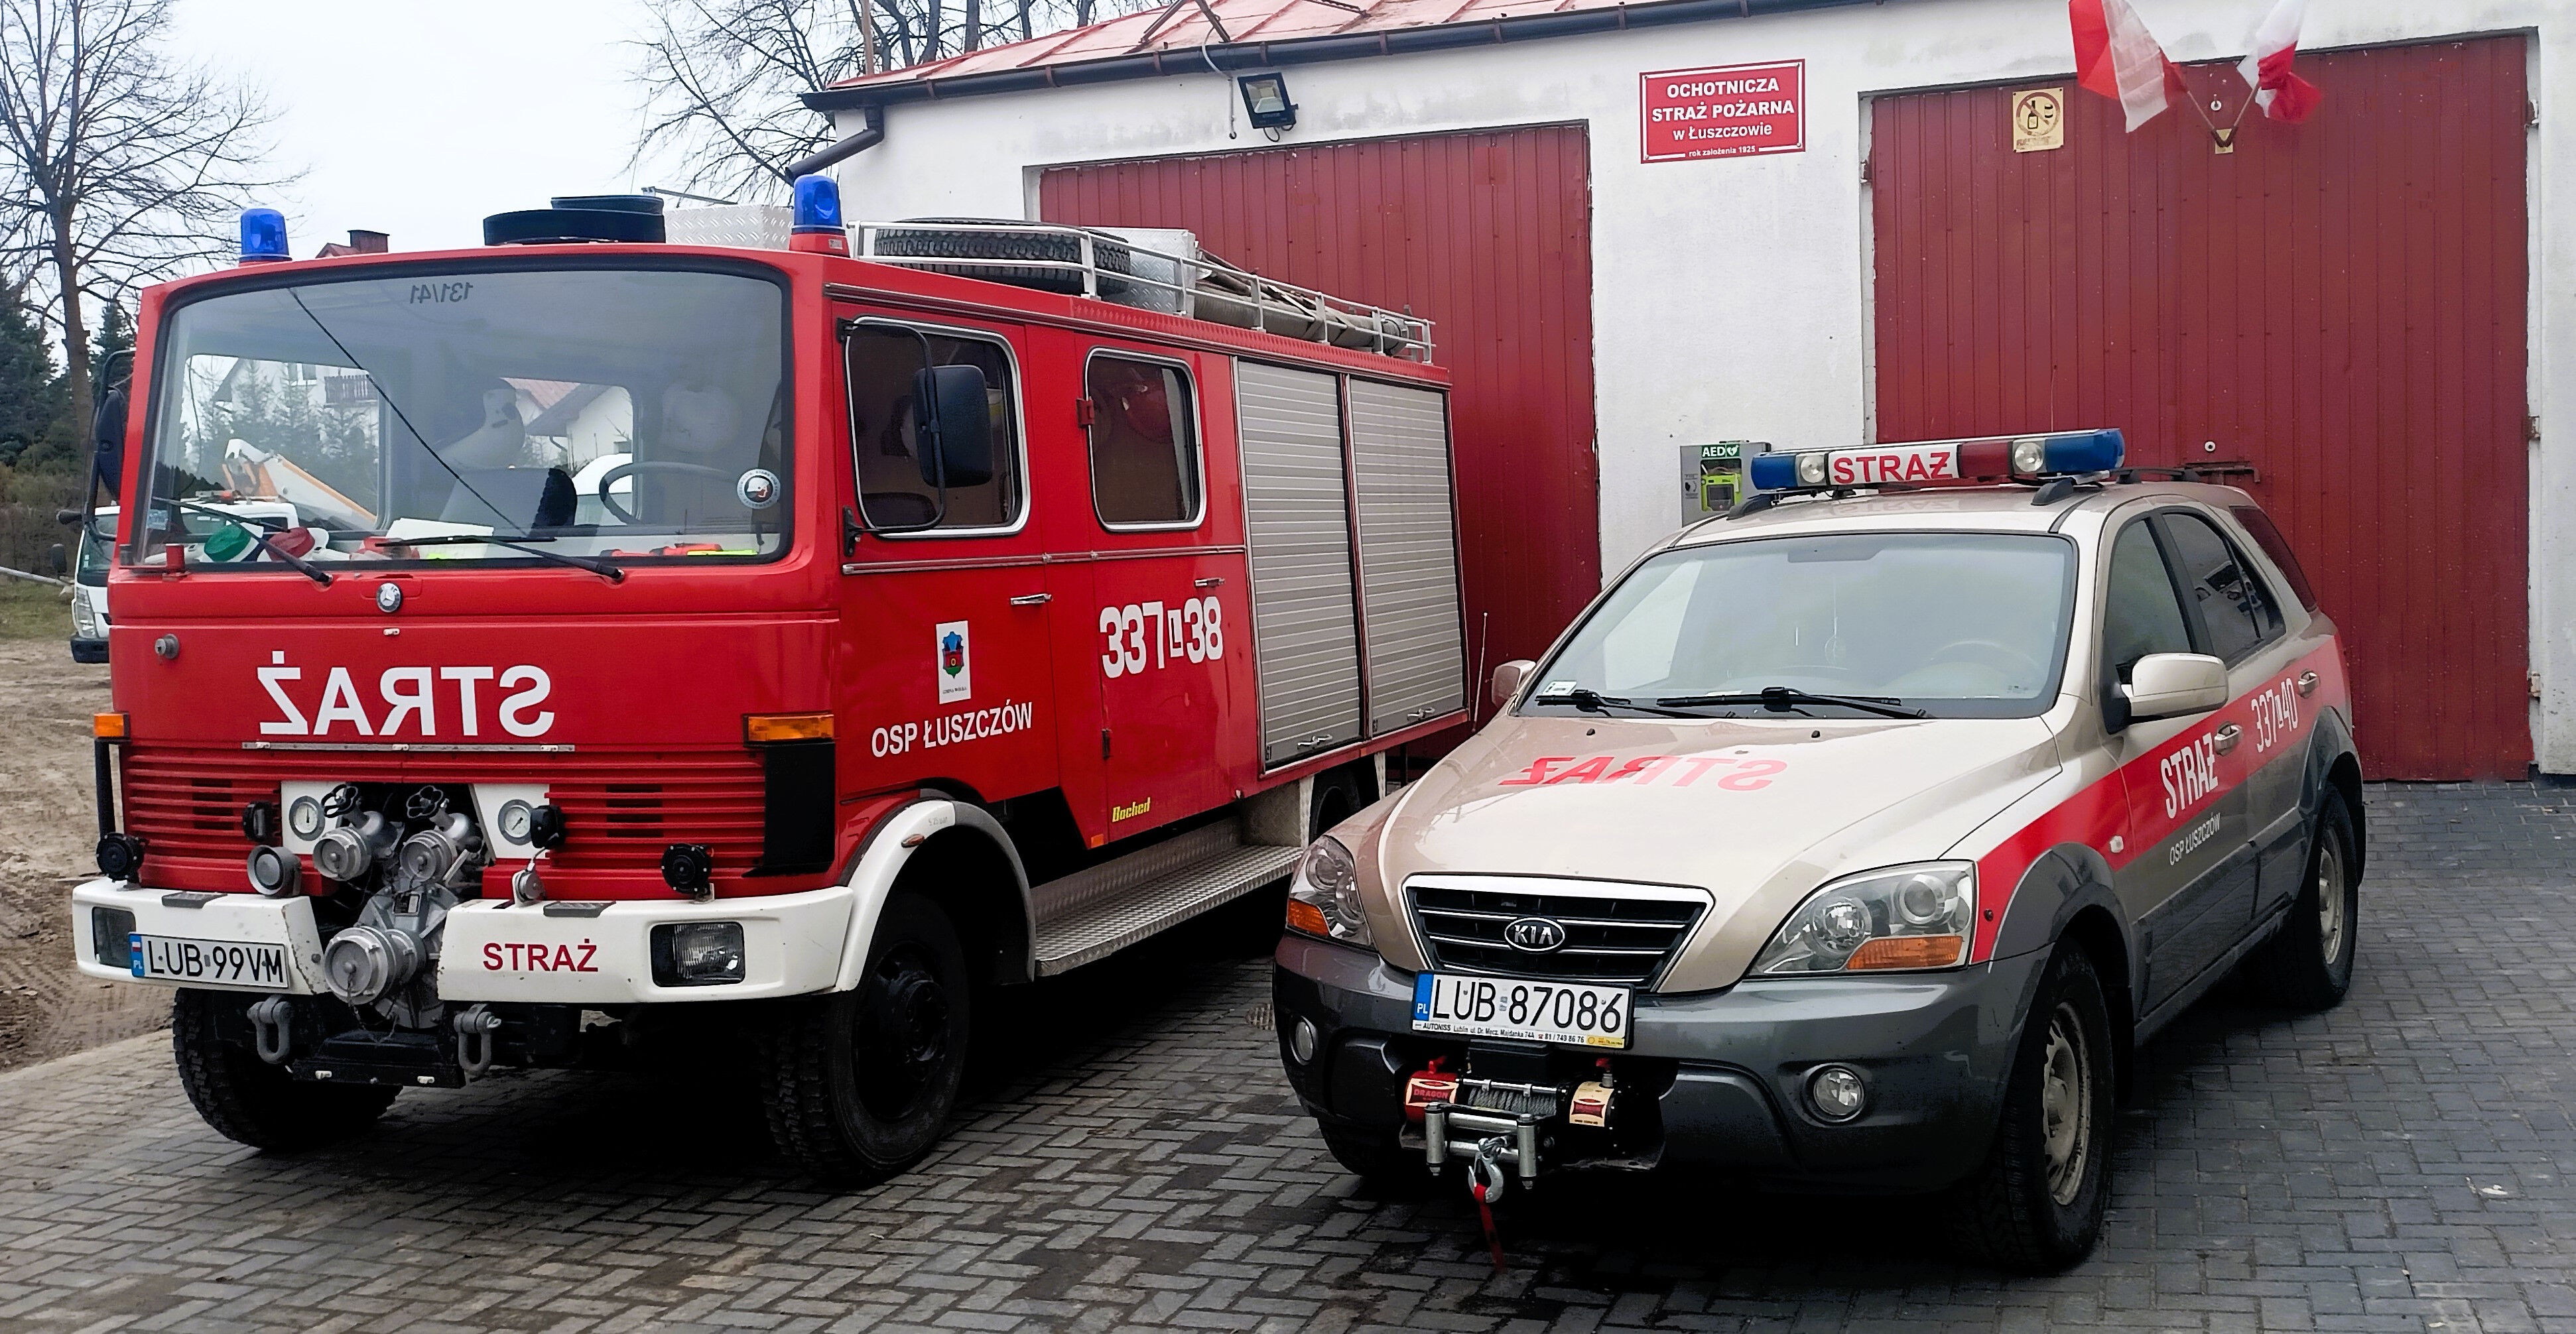 Czerwony wóz strażacki i srebrny samochód operacyjny OSP z napisem "Straż" przed budynkiem straży pożarnej.